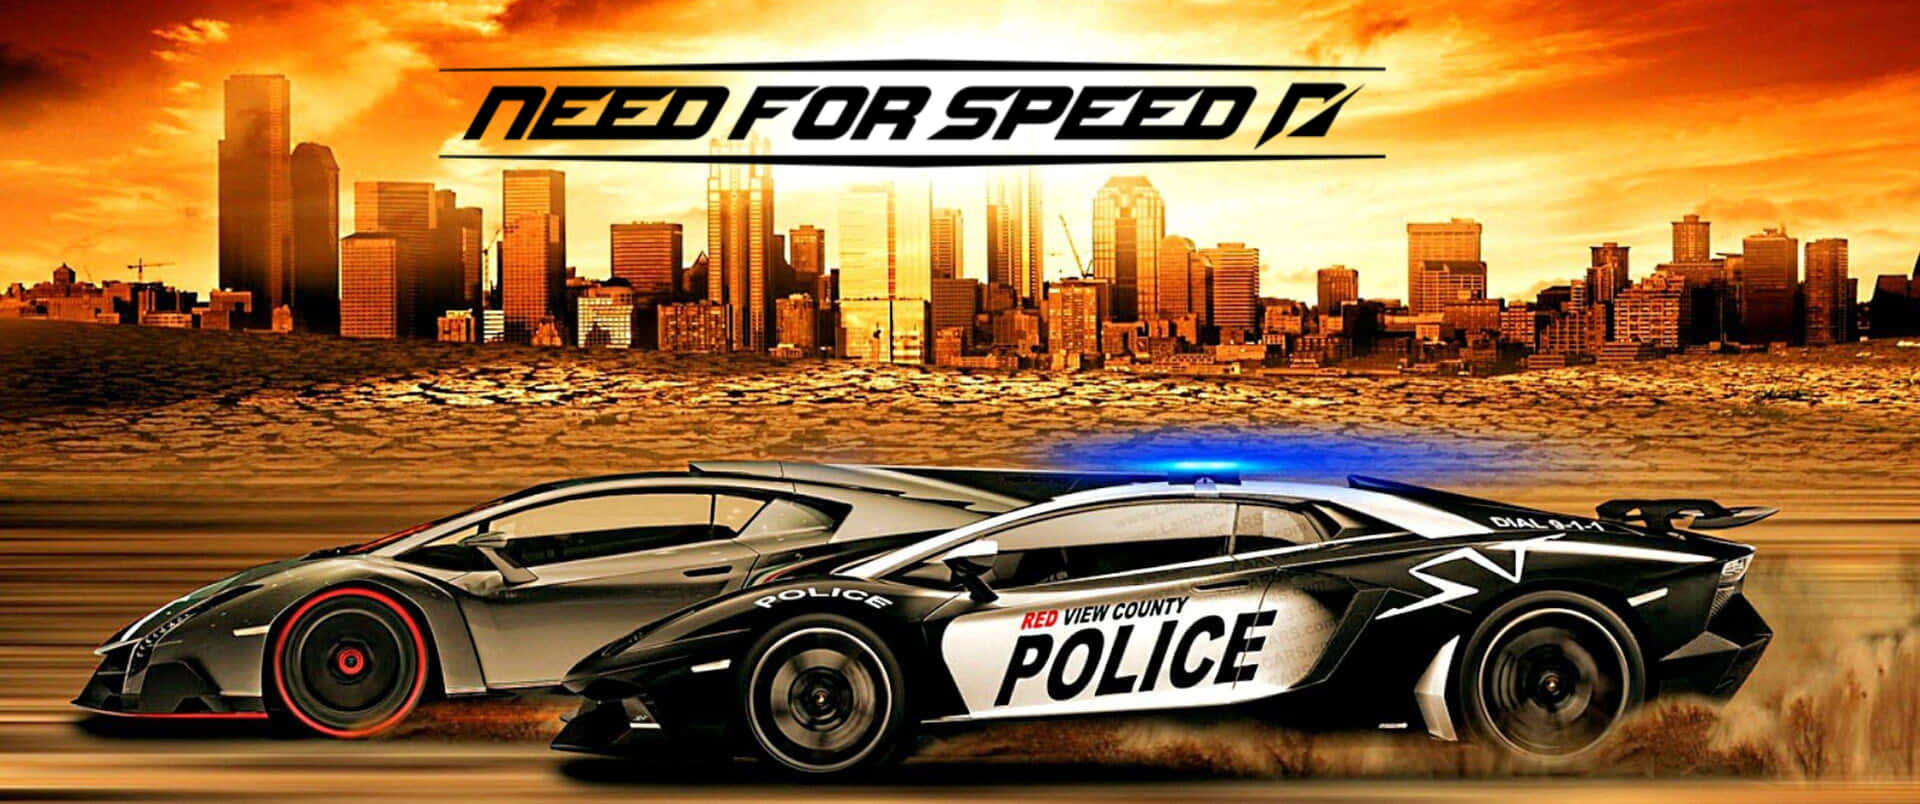 Goditil'emozione Della Pista Da Corsa In Need For Speed